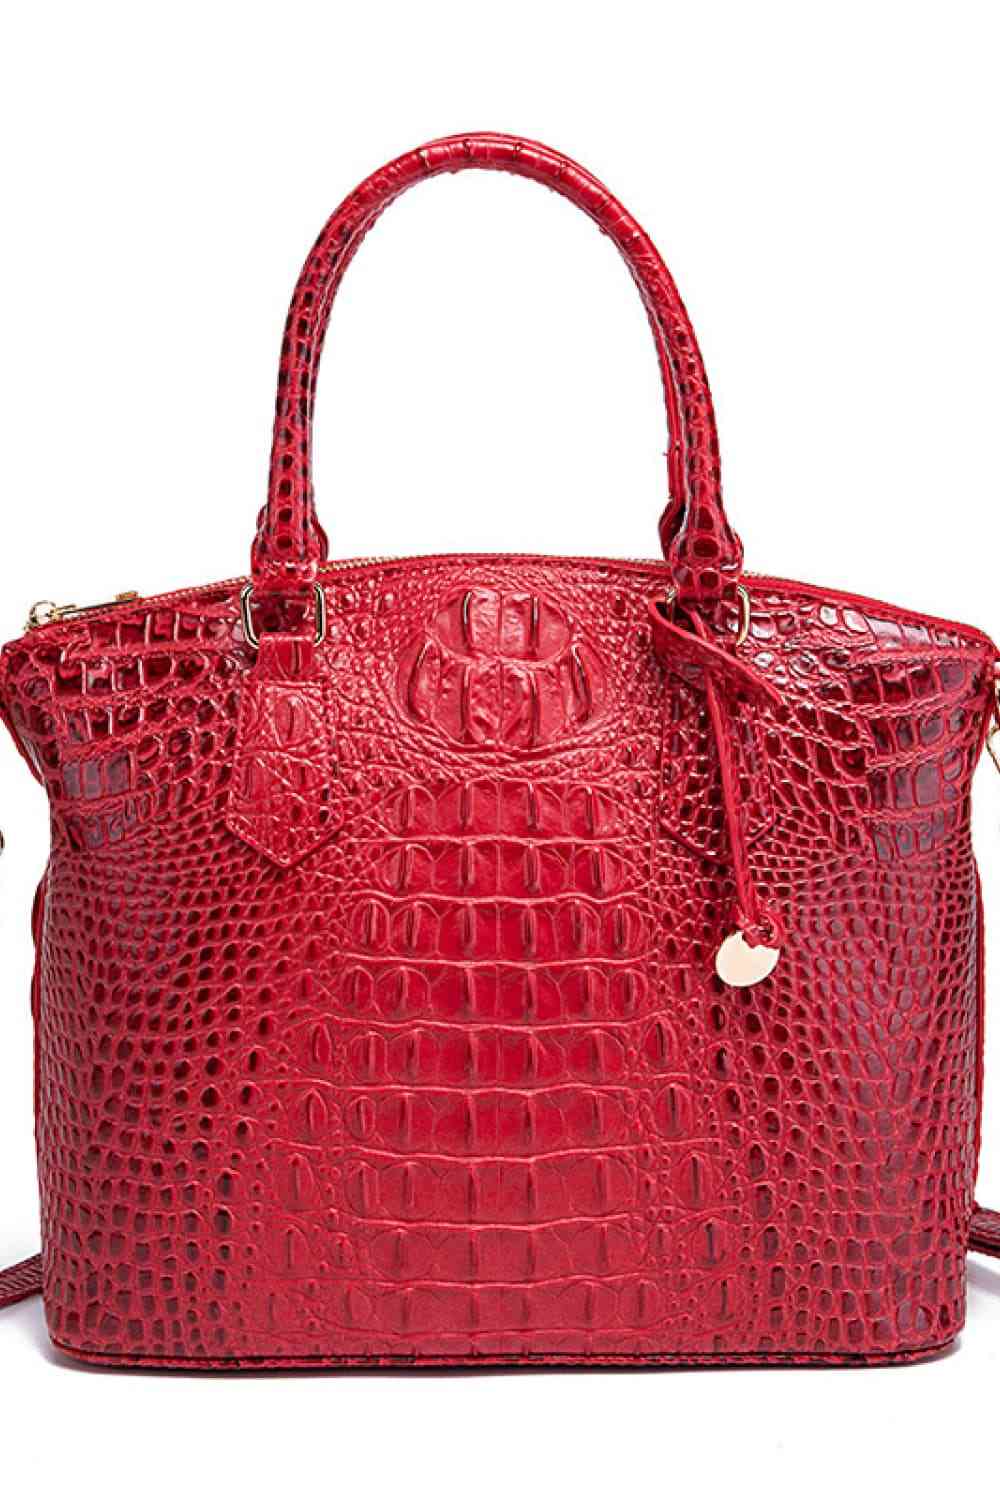 TEEK - Style Scheduler Handbag BAG TEEK Trend Deep Red  